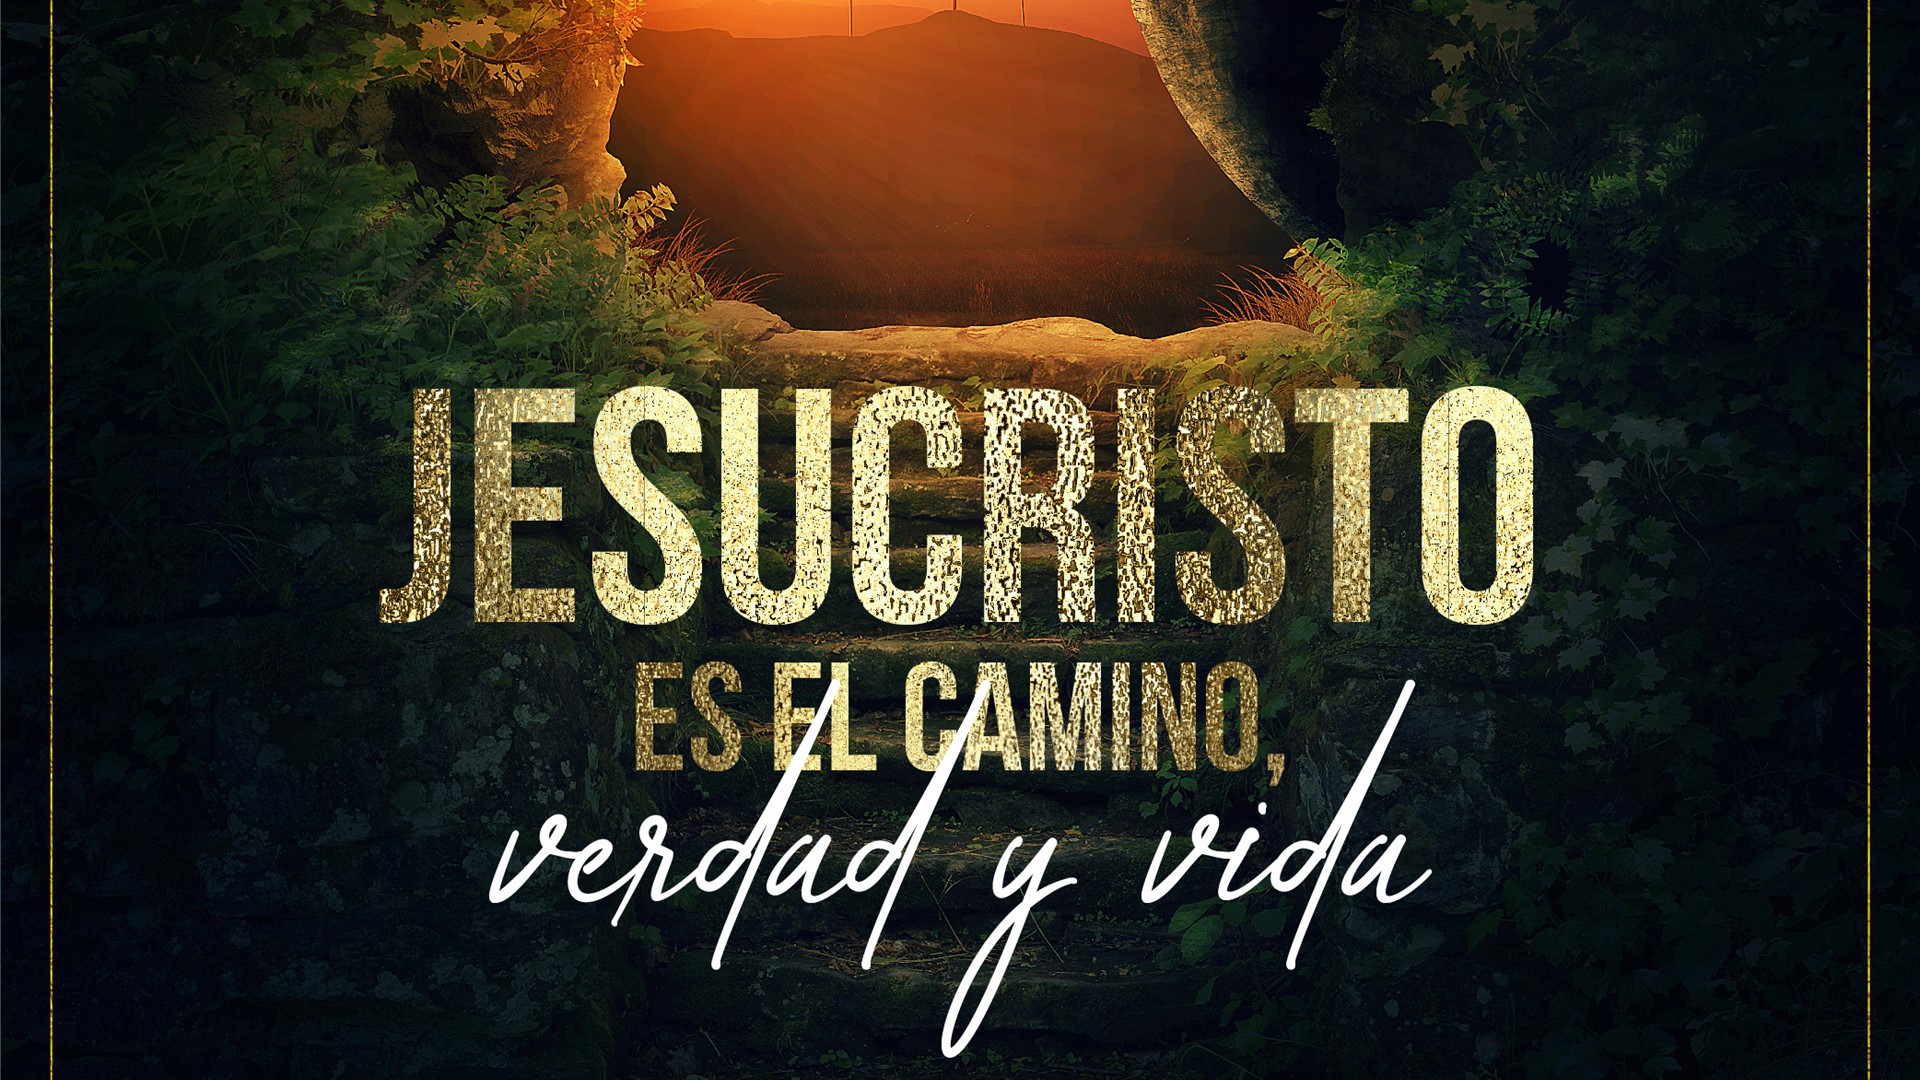 Jesucristo es el camino, la verdad y la vida